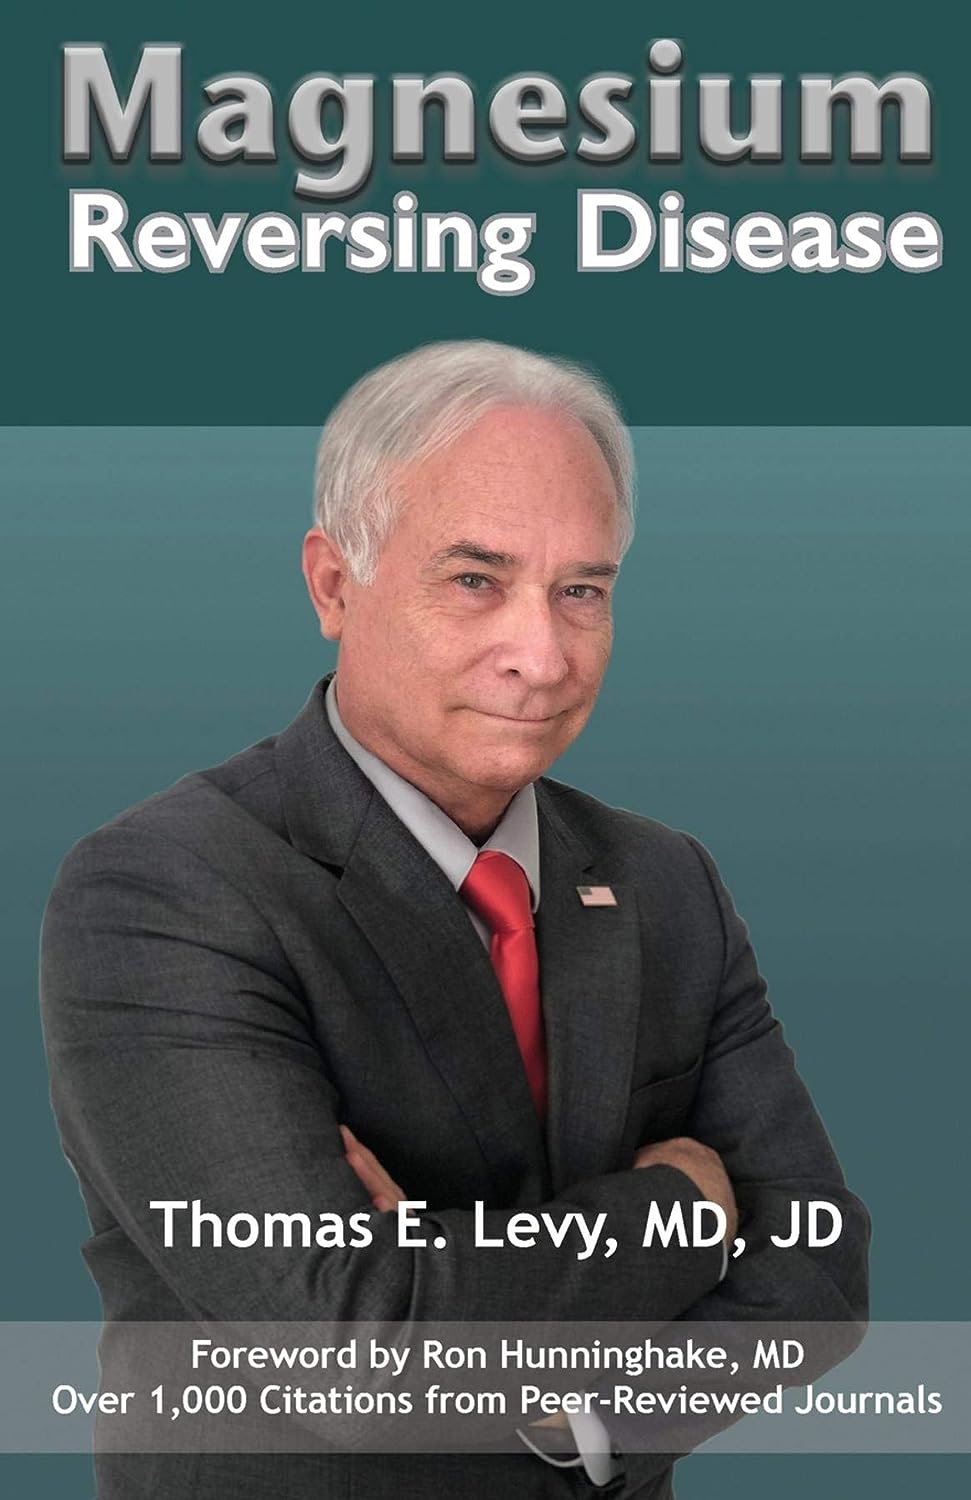 Thomas E Levy MD